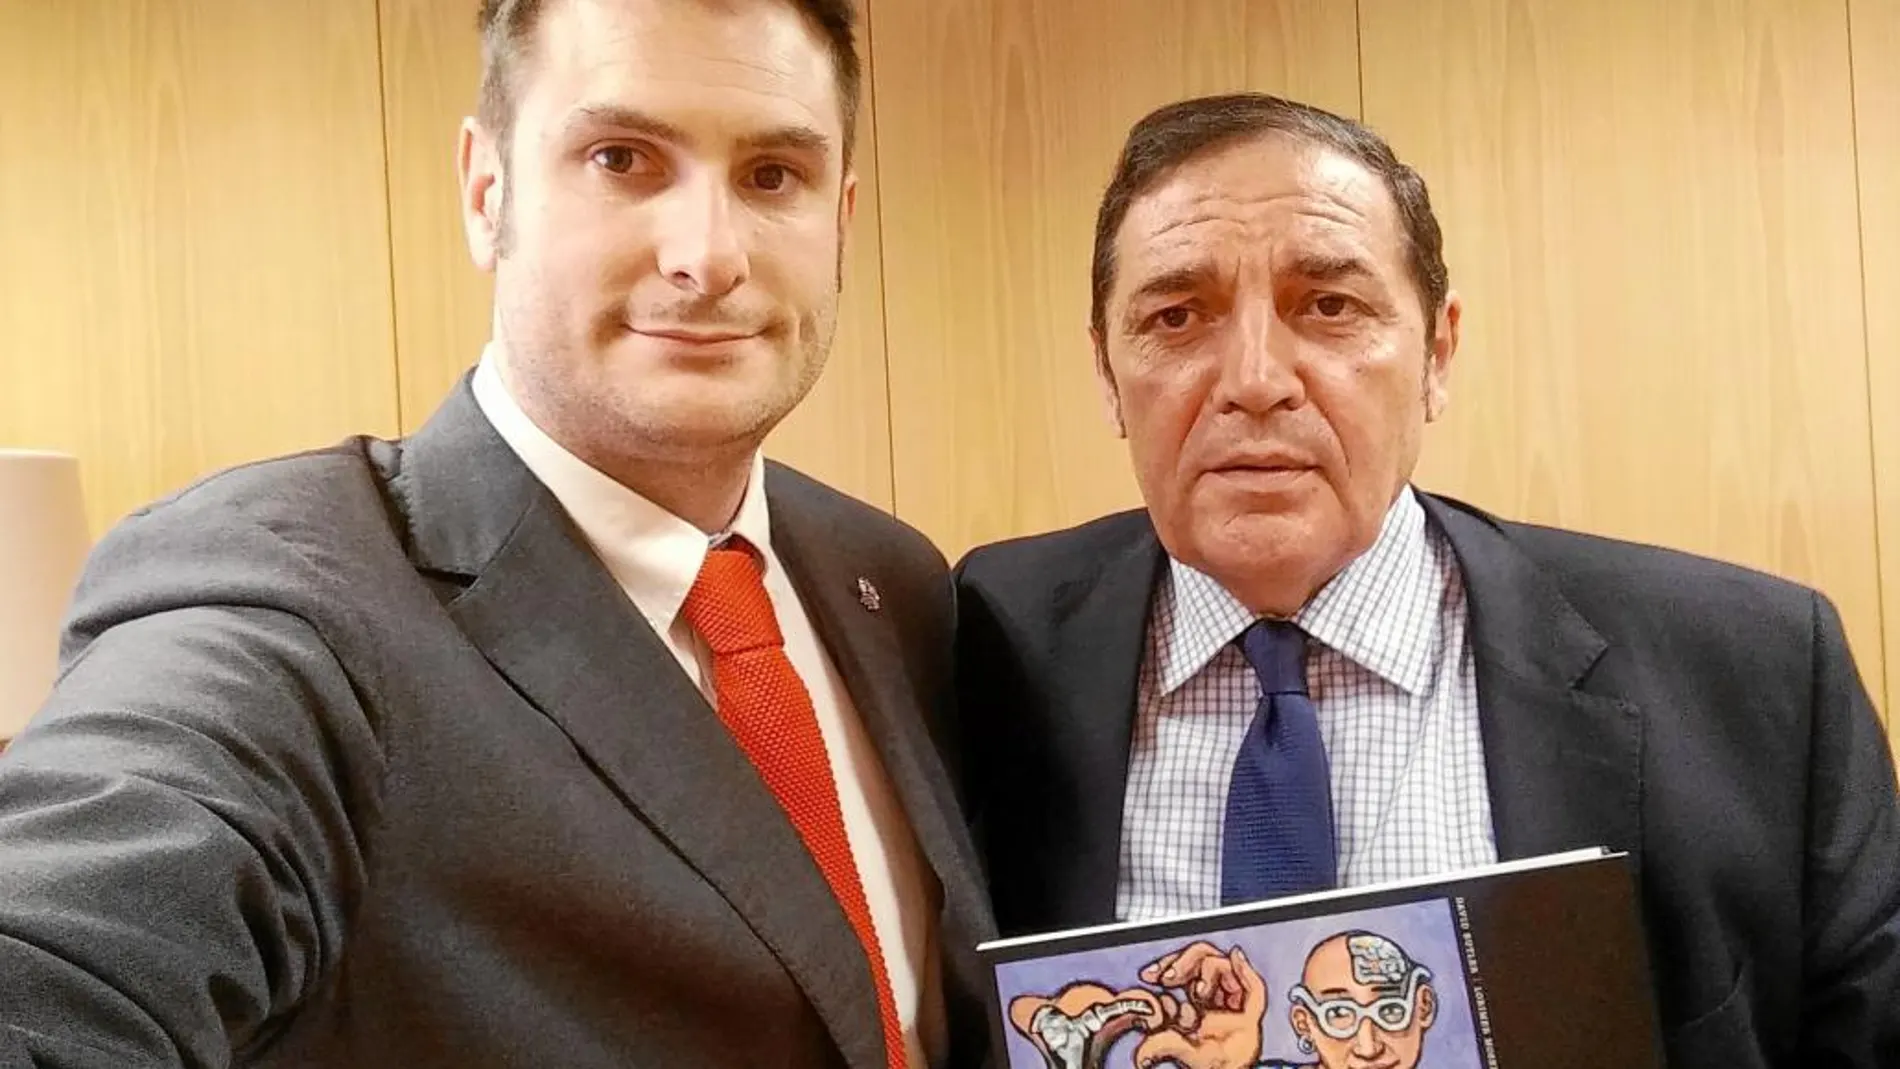 A la izquierda, José luis Morencia junto con el consejero Antonio Sáez Aguado en la presentación del libro «Escuchando el dolor», del australiano David Butler, uno de los ponentes del Congreso